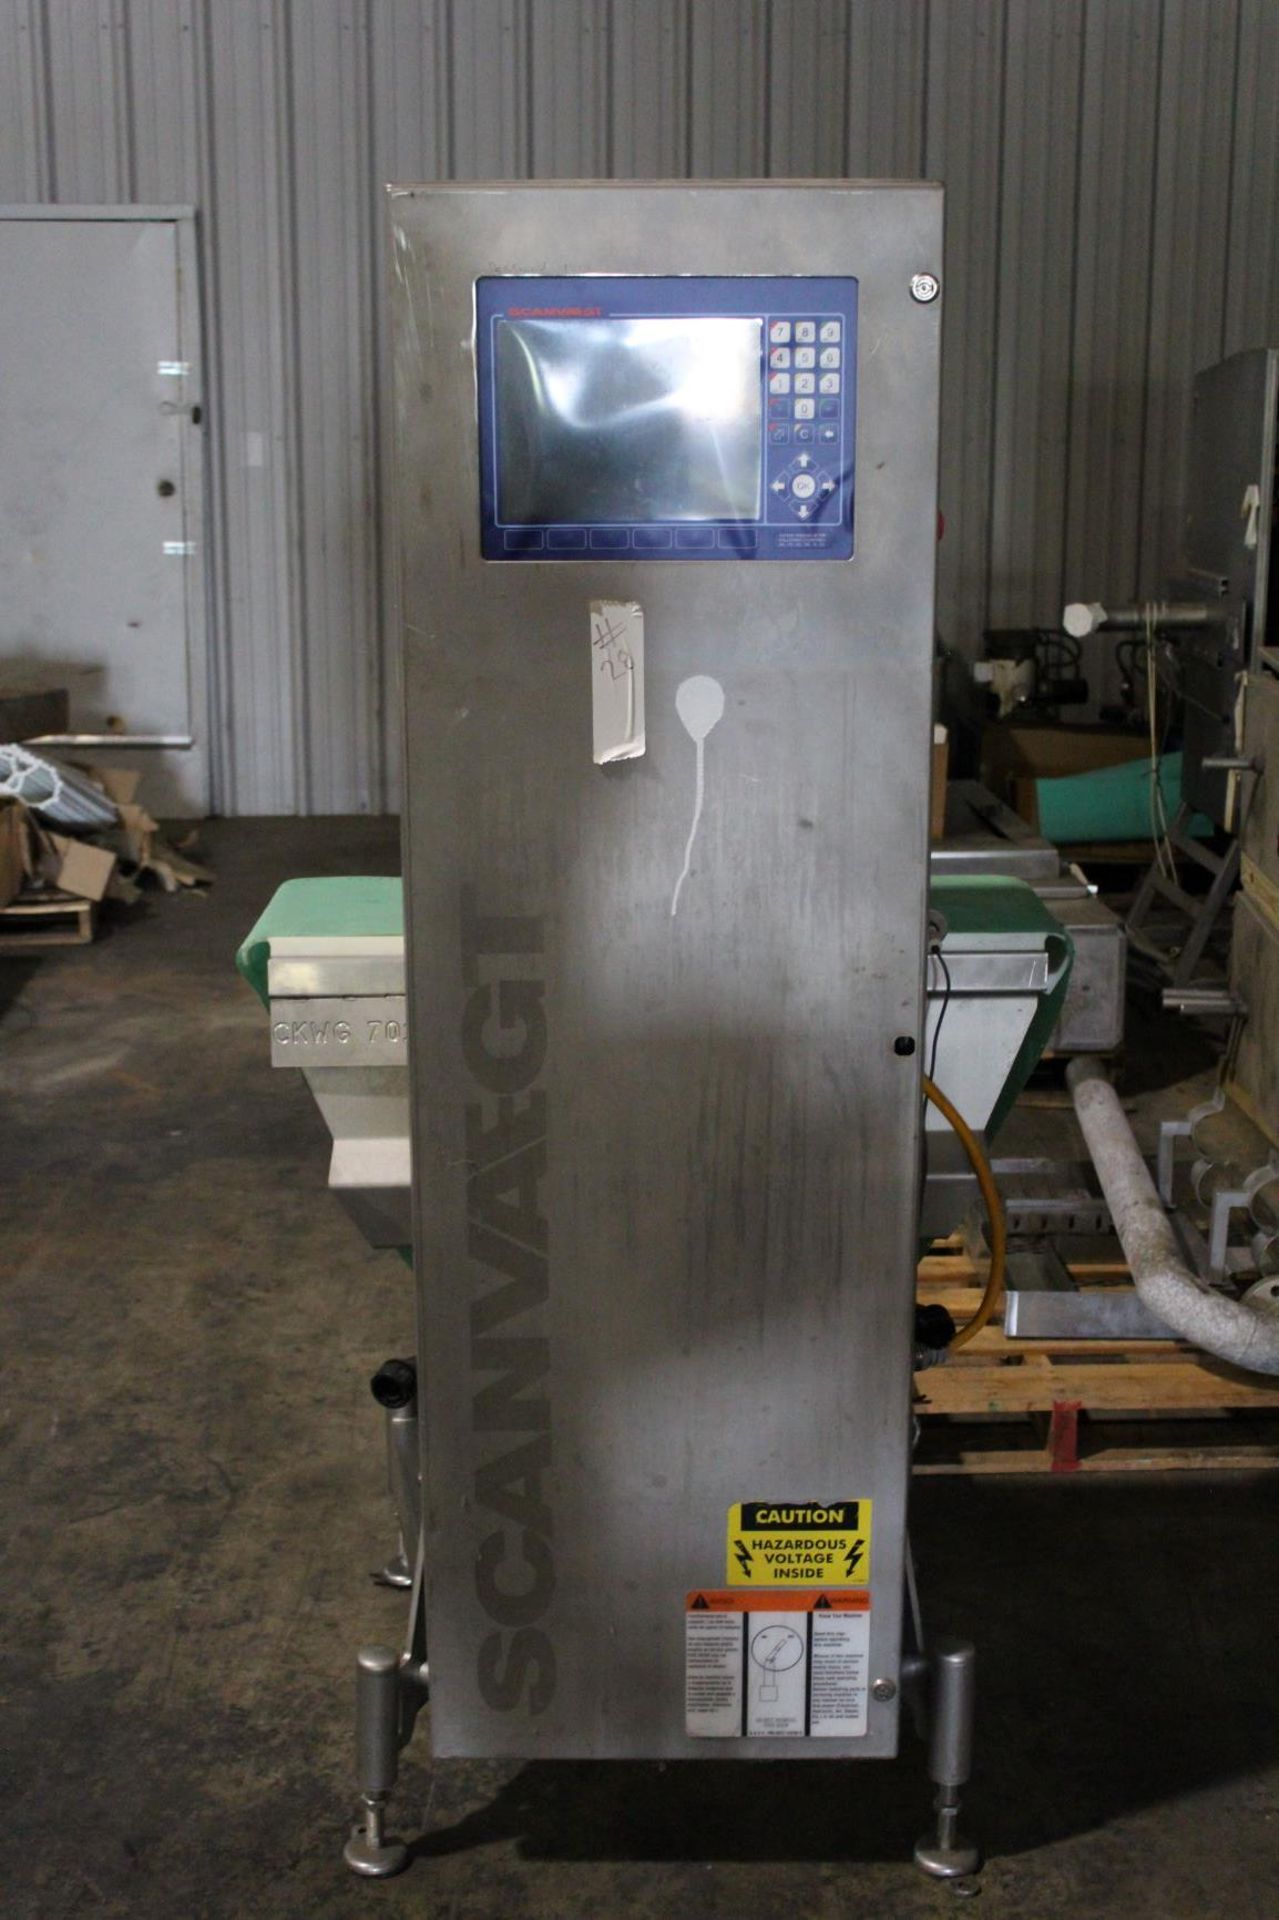 Scanvaegt Weighing Machine, Model# 4717.275.30, Serial# b0e00308, Item# ffscvtwmac0308, Located